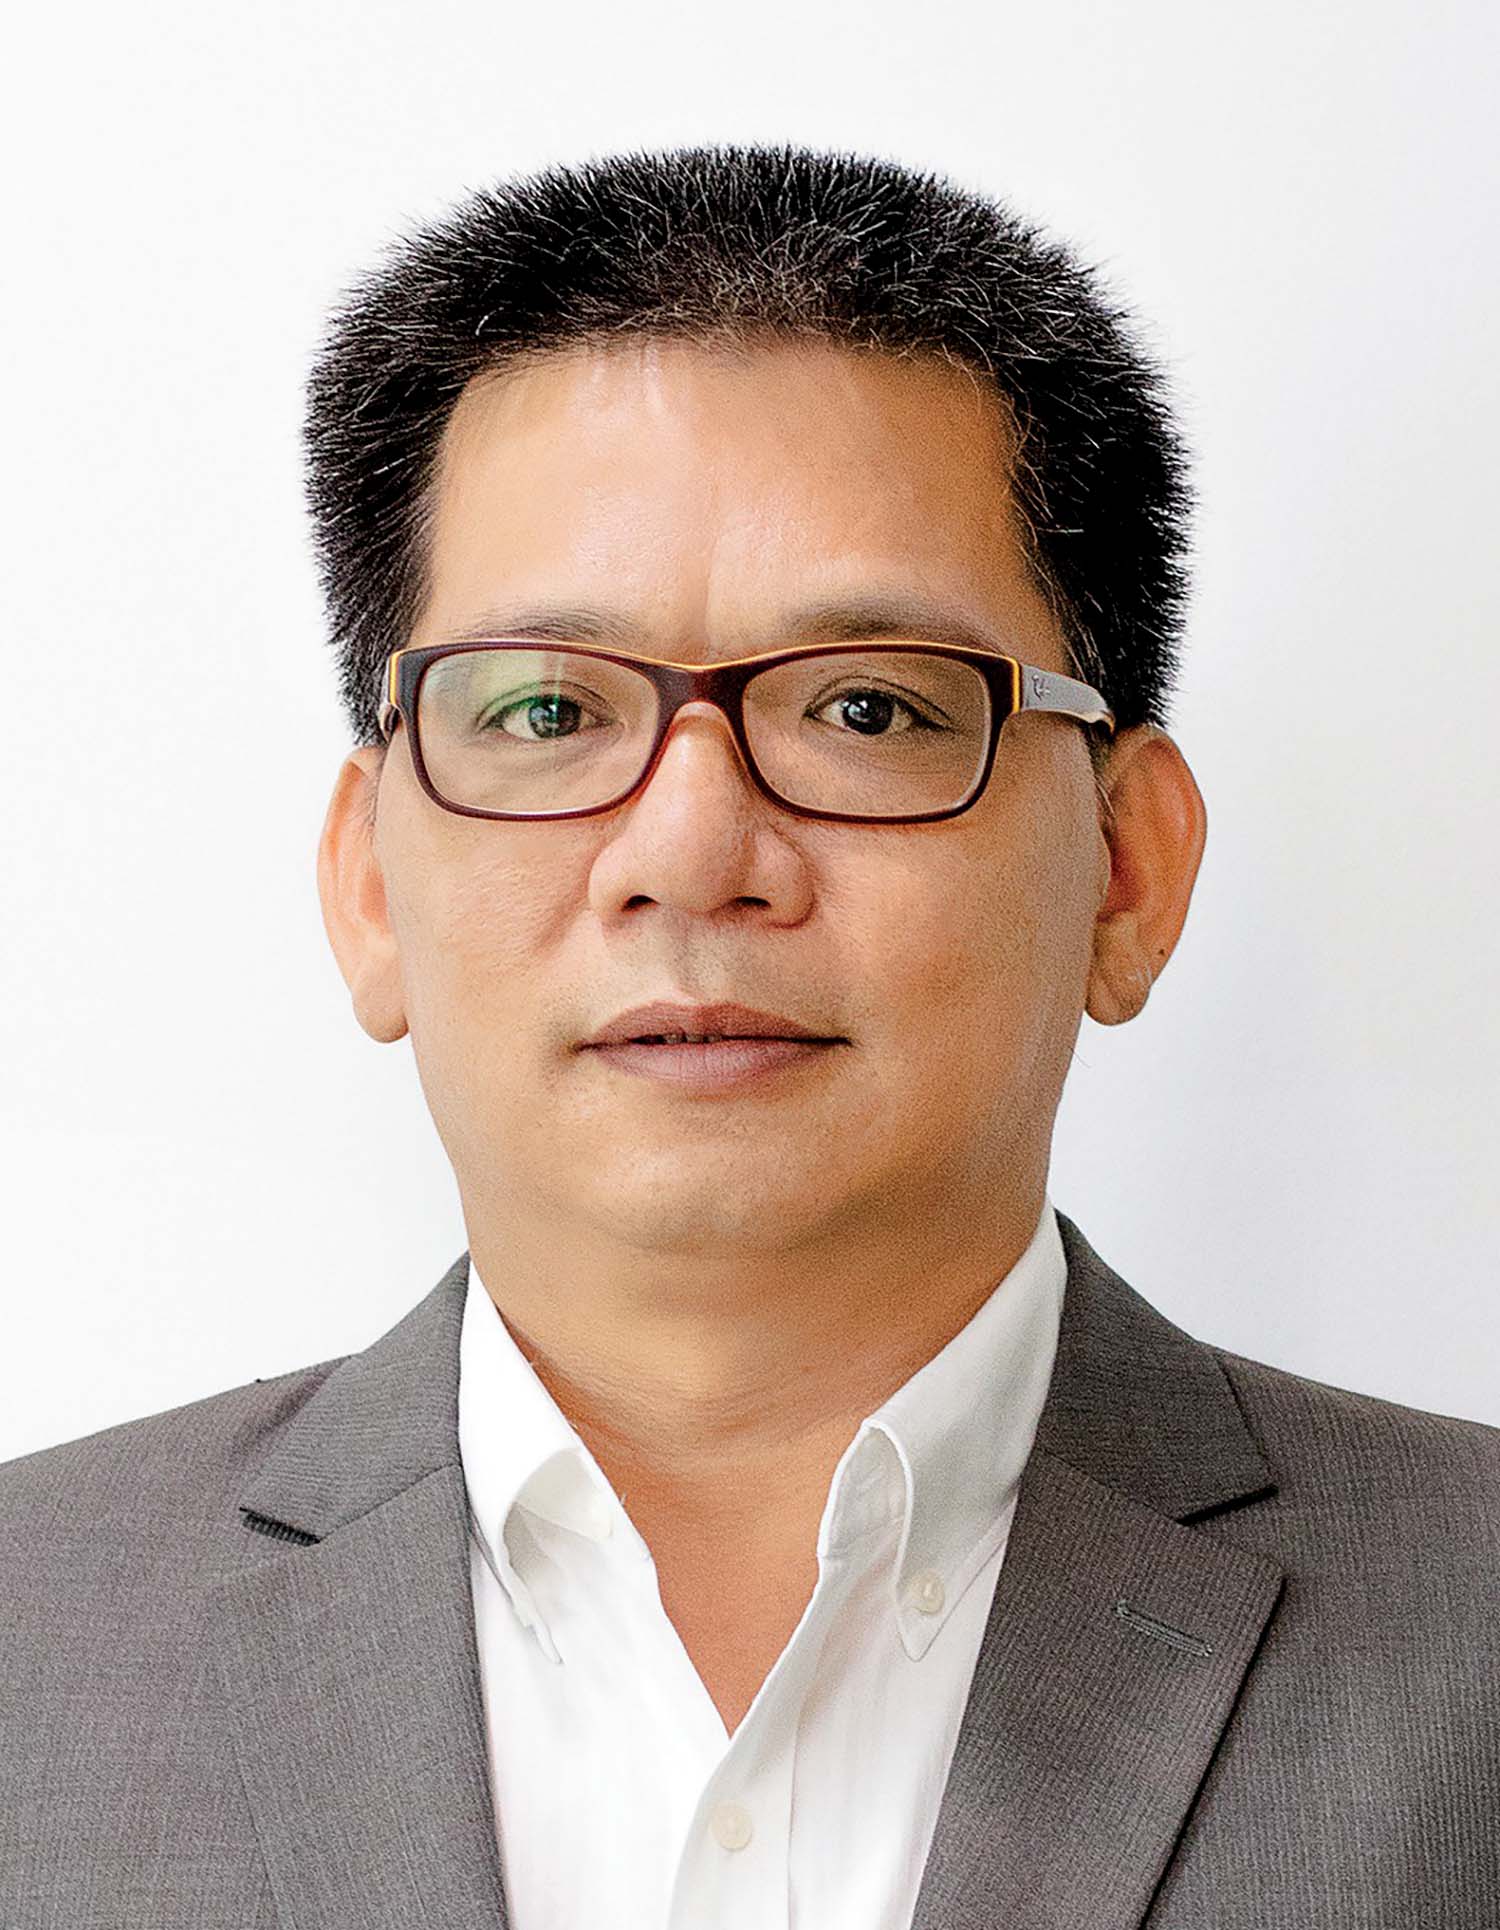 Ông Lương Văn Trung, luật sư thành viên Công ty Lexcomm Vietnam LLC, Trọng tài viên - Trung tâm Trọng tài quốc tế Việt Nam (VIAC)